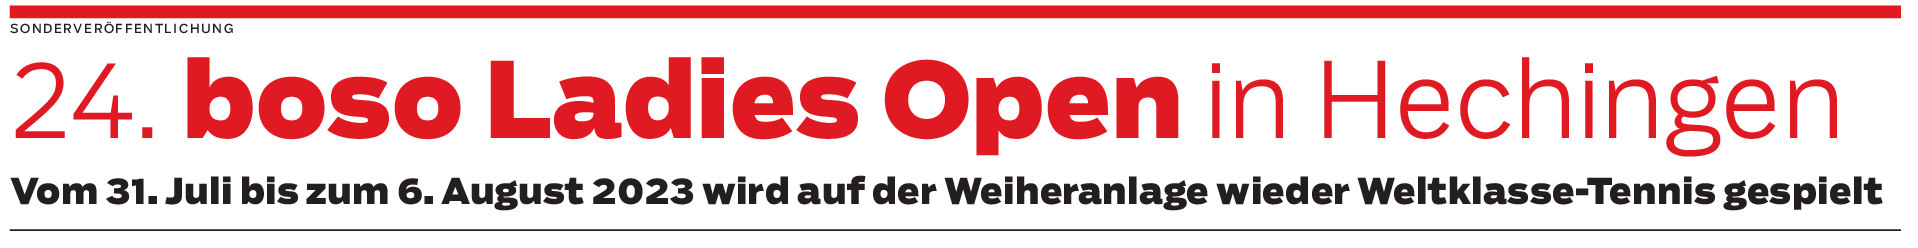 24. boso Ladies Open in Hechingen: Dieses Turnier sollten Sie nicht verpassen!